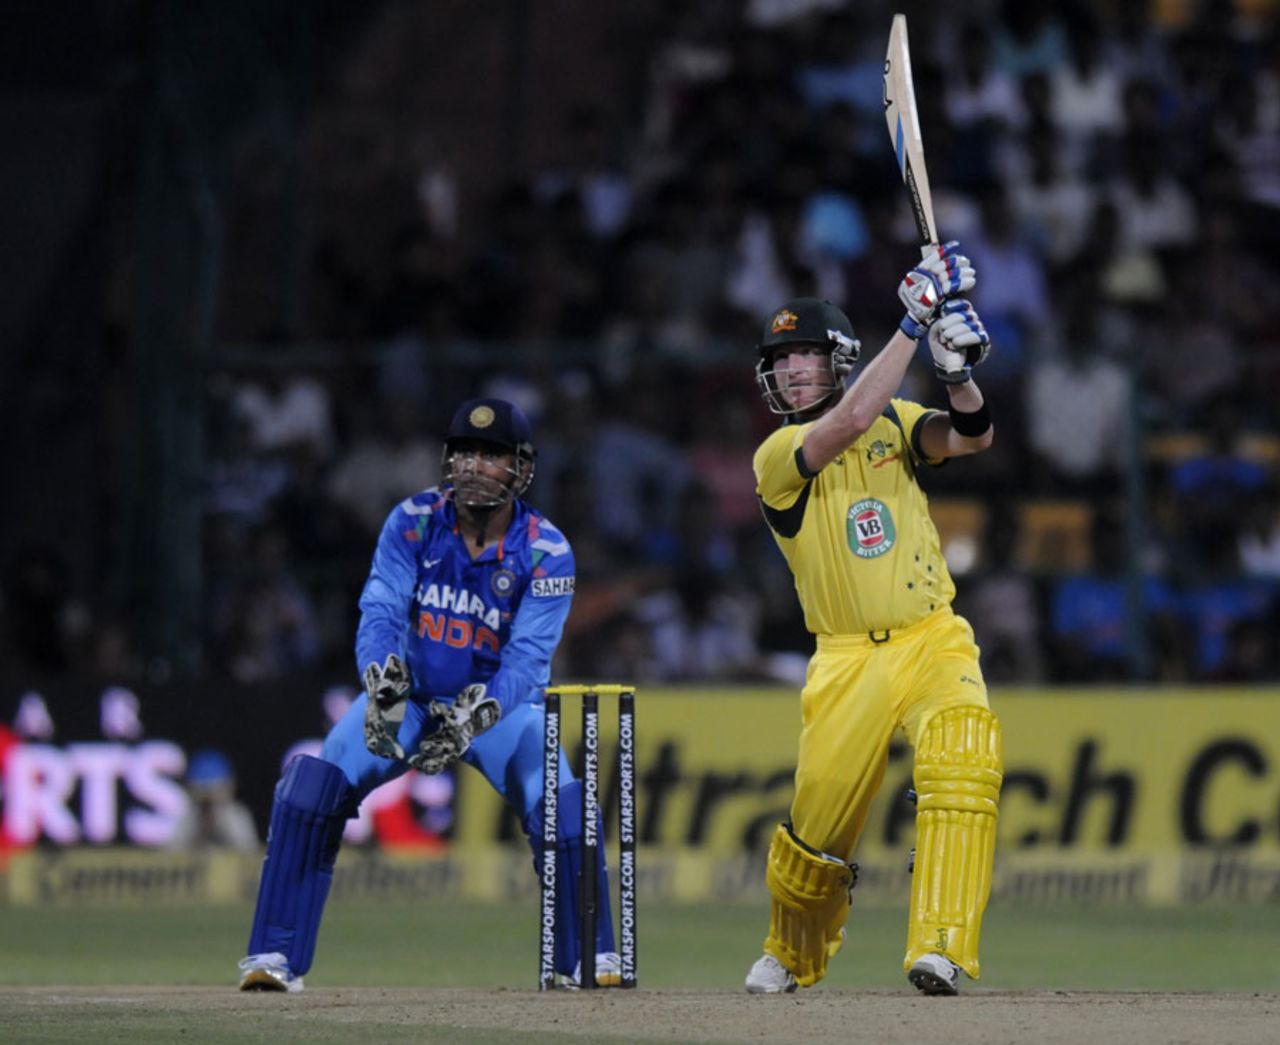 Brad Haddin scored 40 off 49, India v Australia, 7th ODI, Bangalore, November 2, 2013